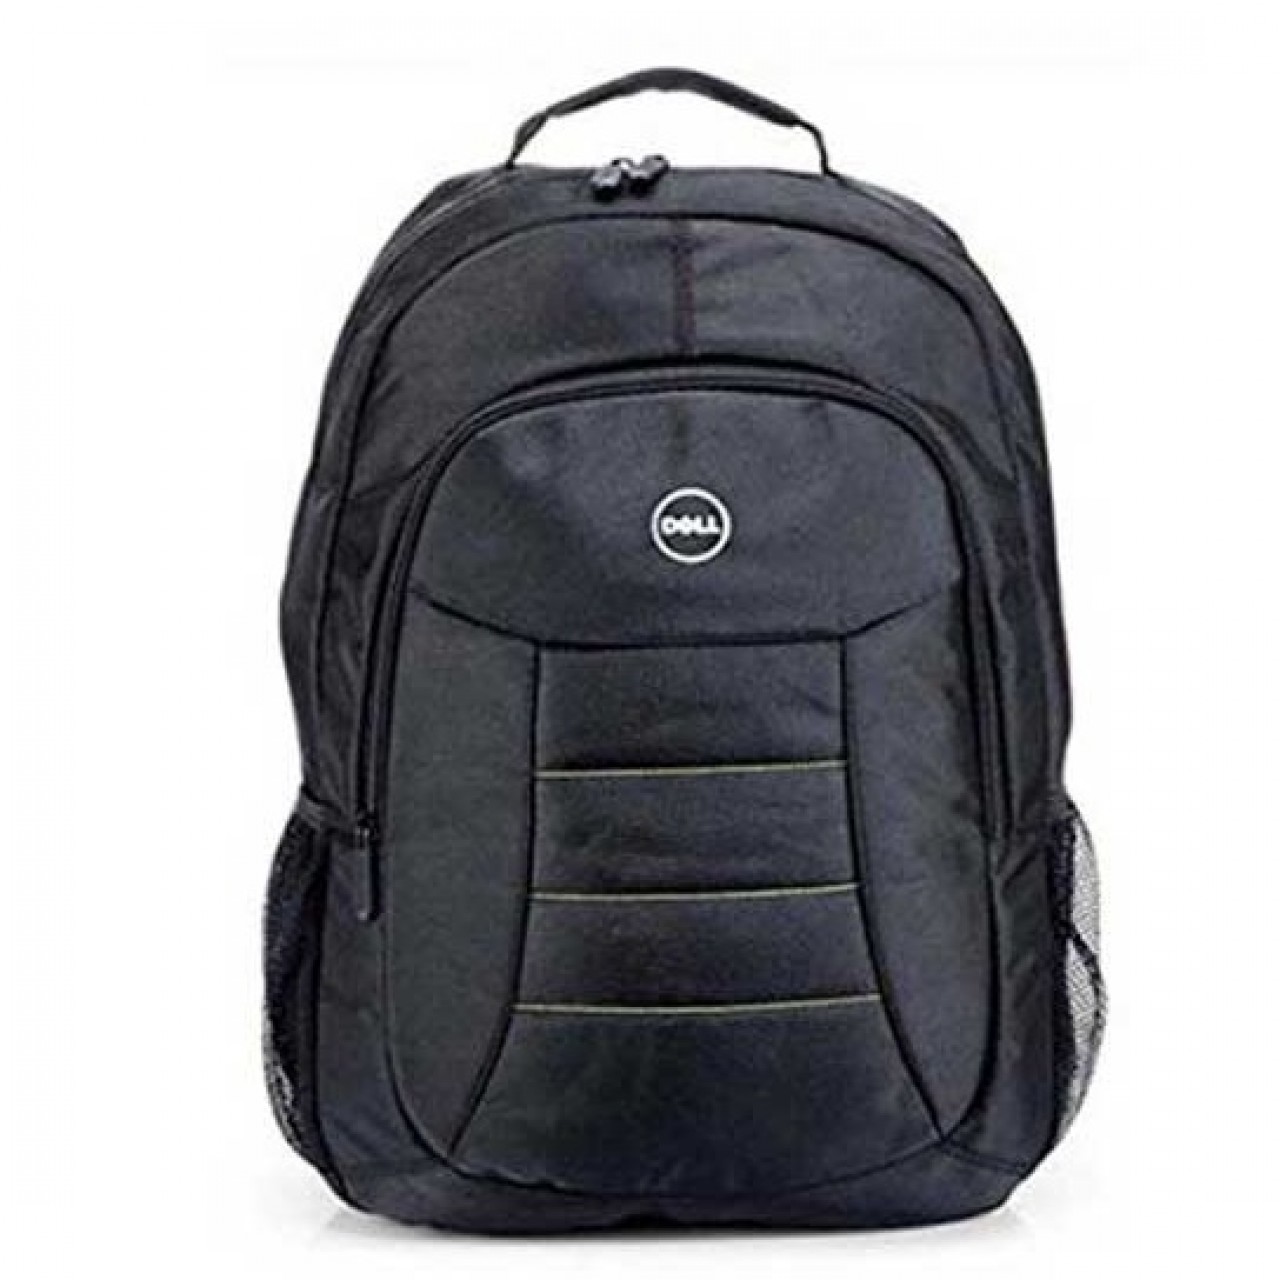 Dell Laptop Backpack - Black